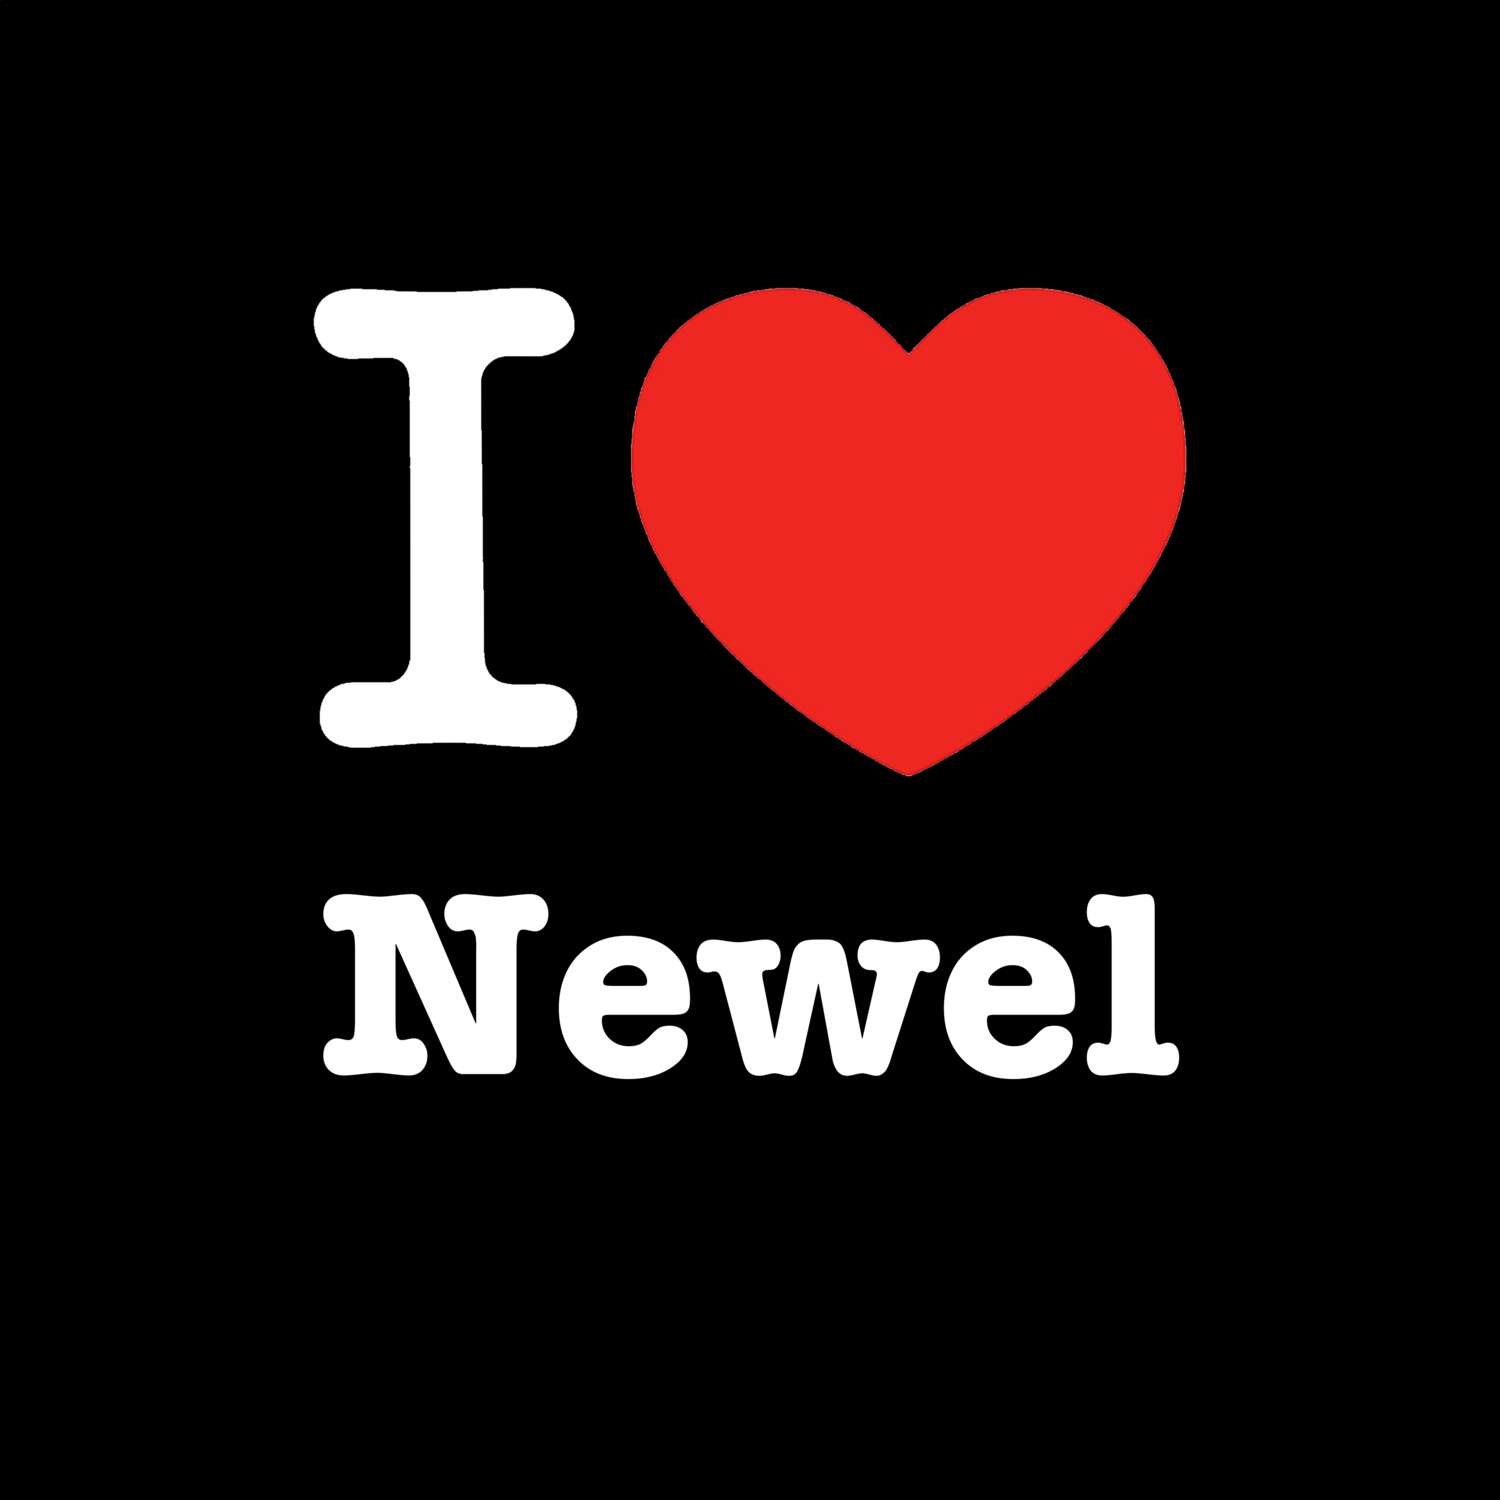 Newel T-Shirt »I love«